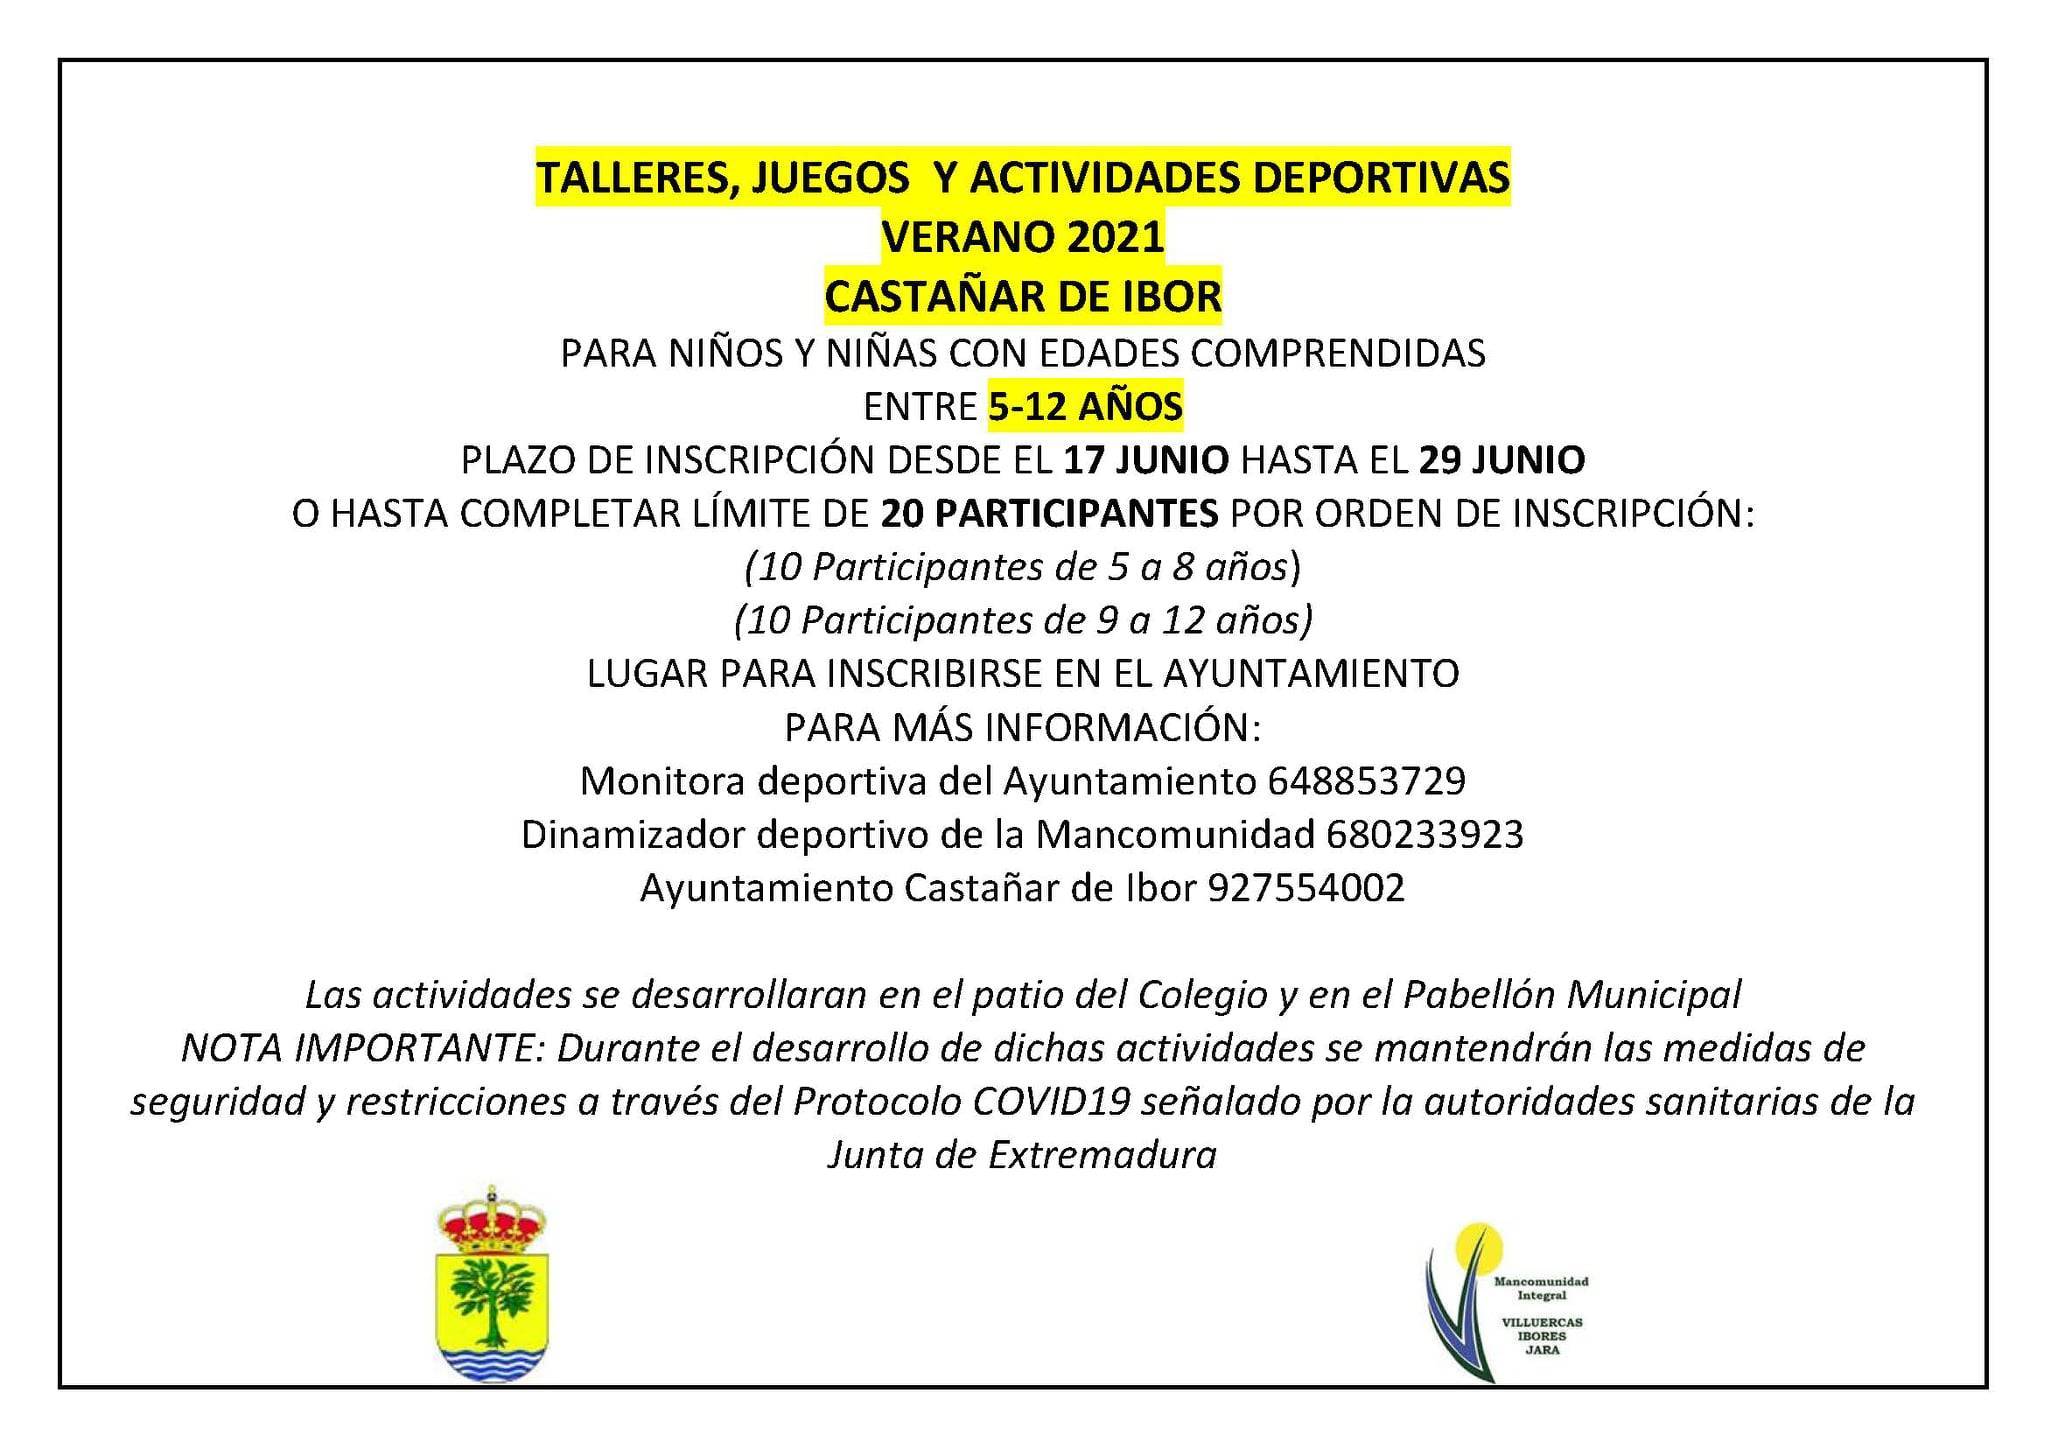 Talleres, juegos y actividades deportivas de verano (2021) - Castañar de Ibor (Cáceres)